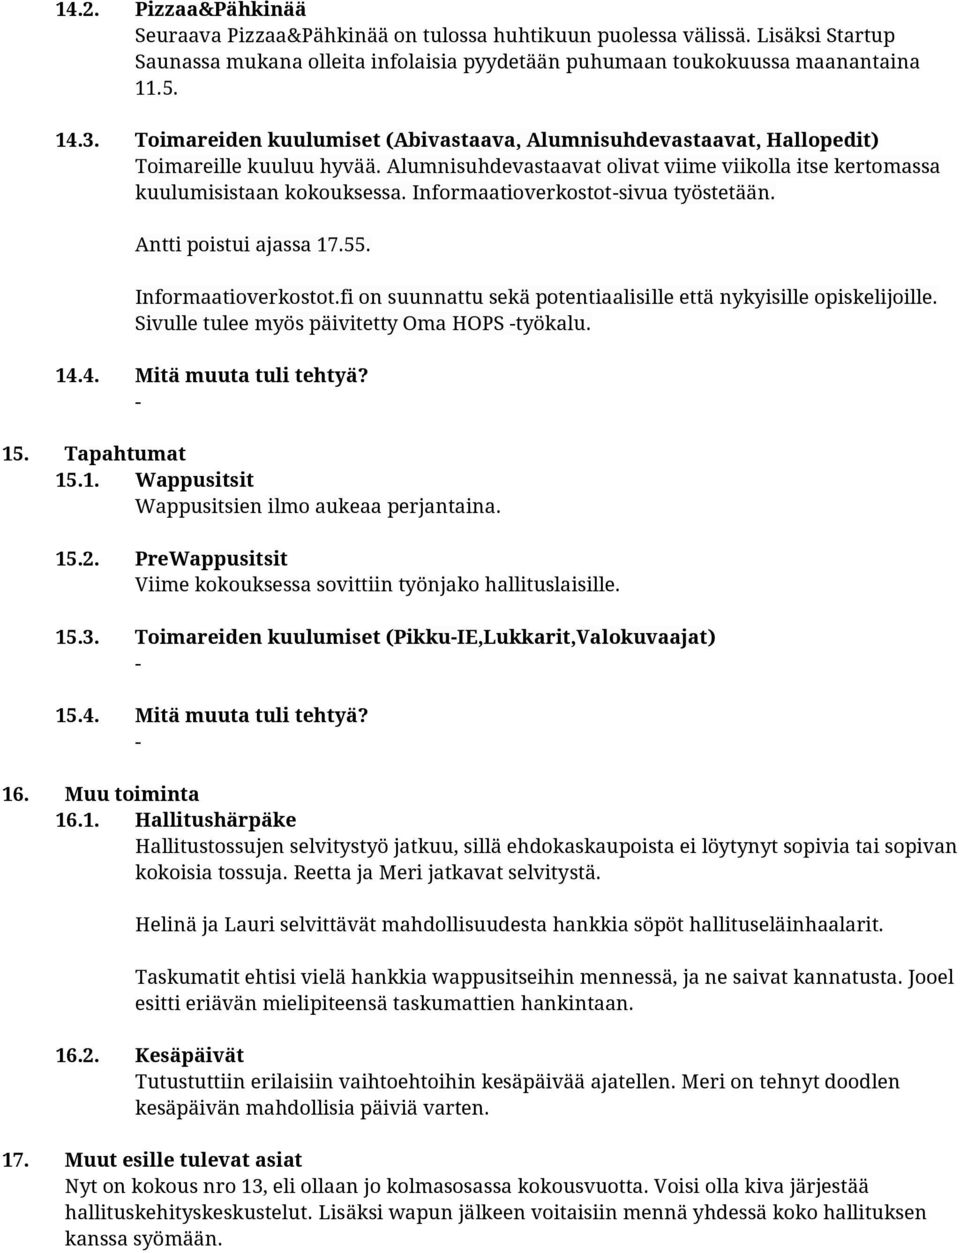 Informaatioverkostotsivua työstetään. Antti poistui ajassa 17.55. Informaatioverkostot.fi on suunnattu sekä potentiaalisille että nykyisille opiskelijoille.